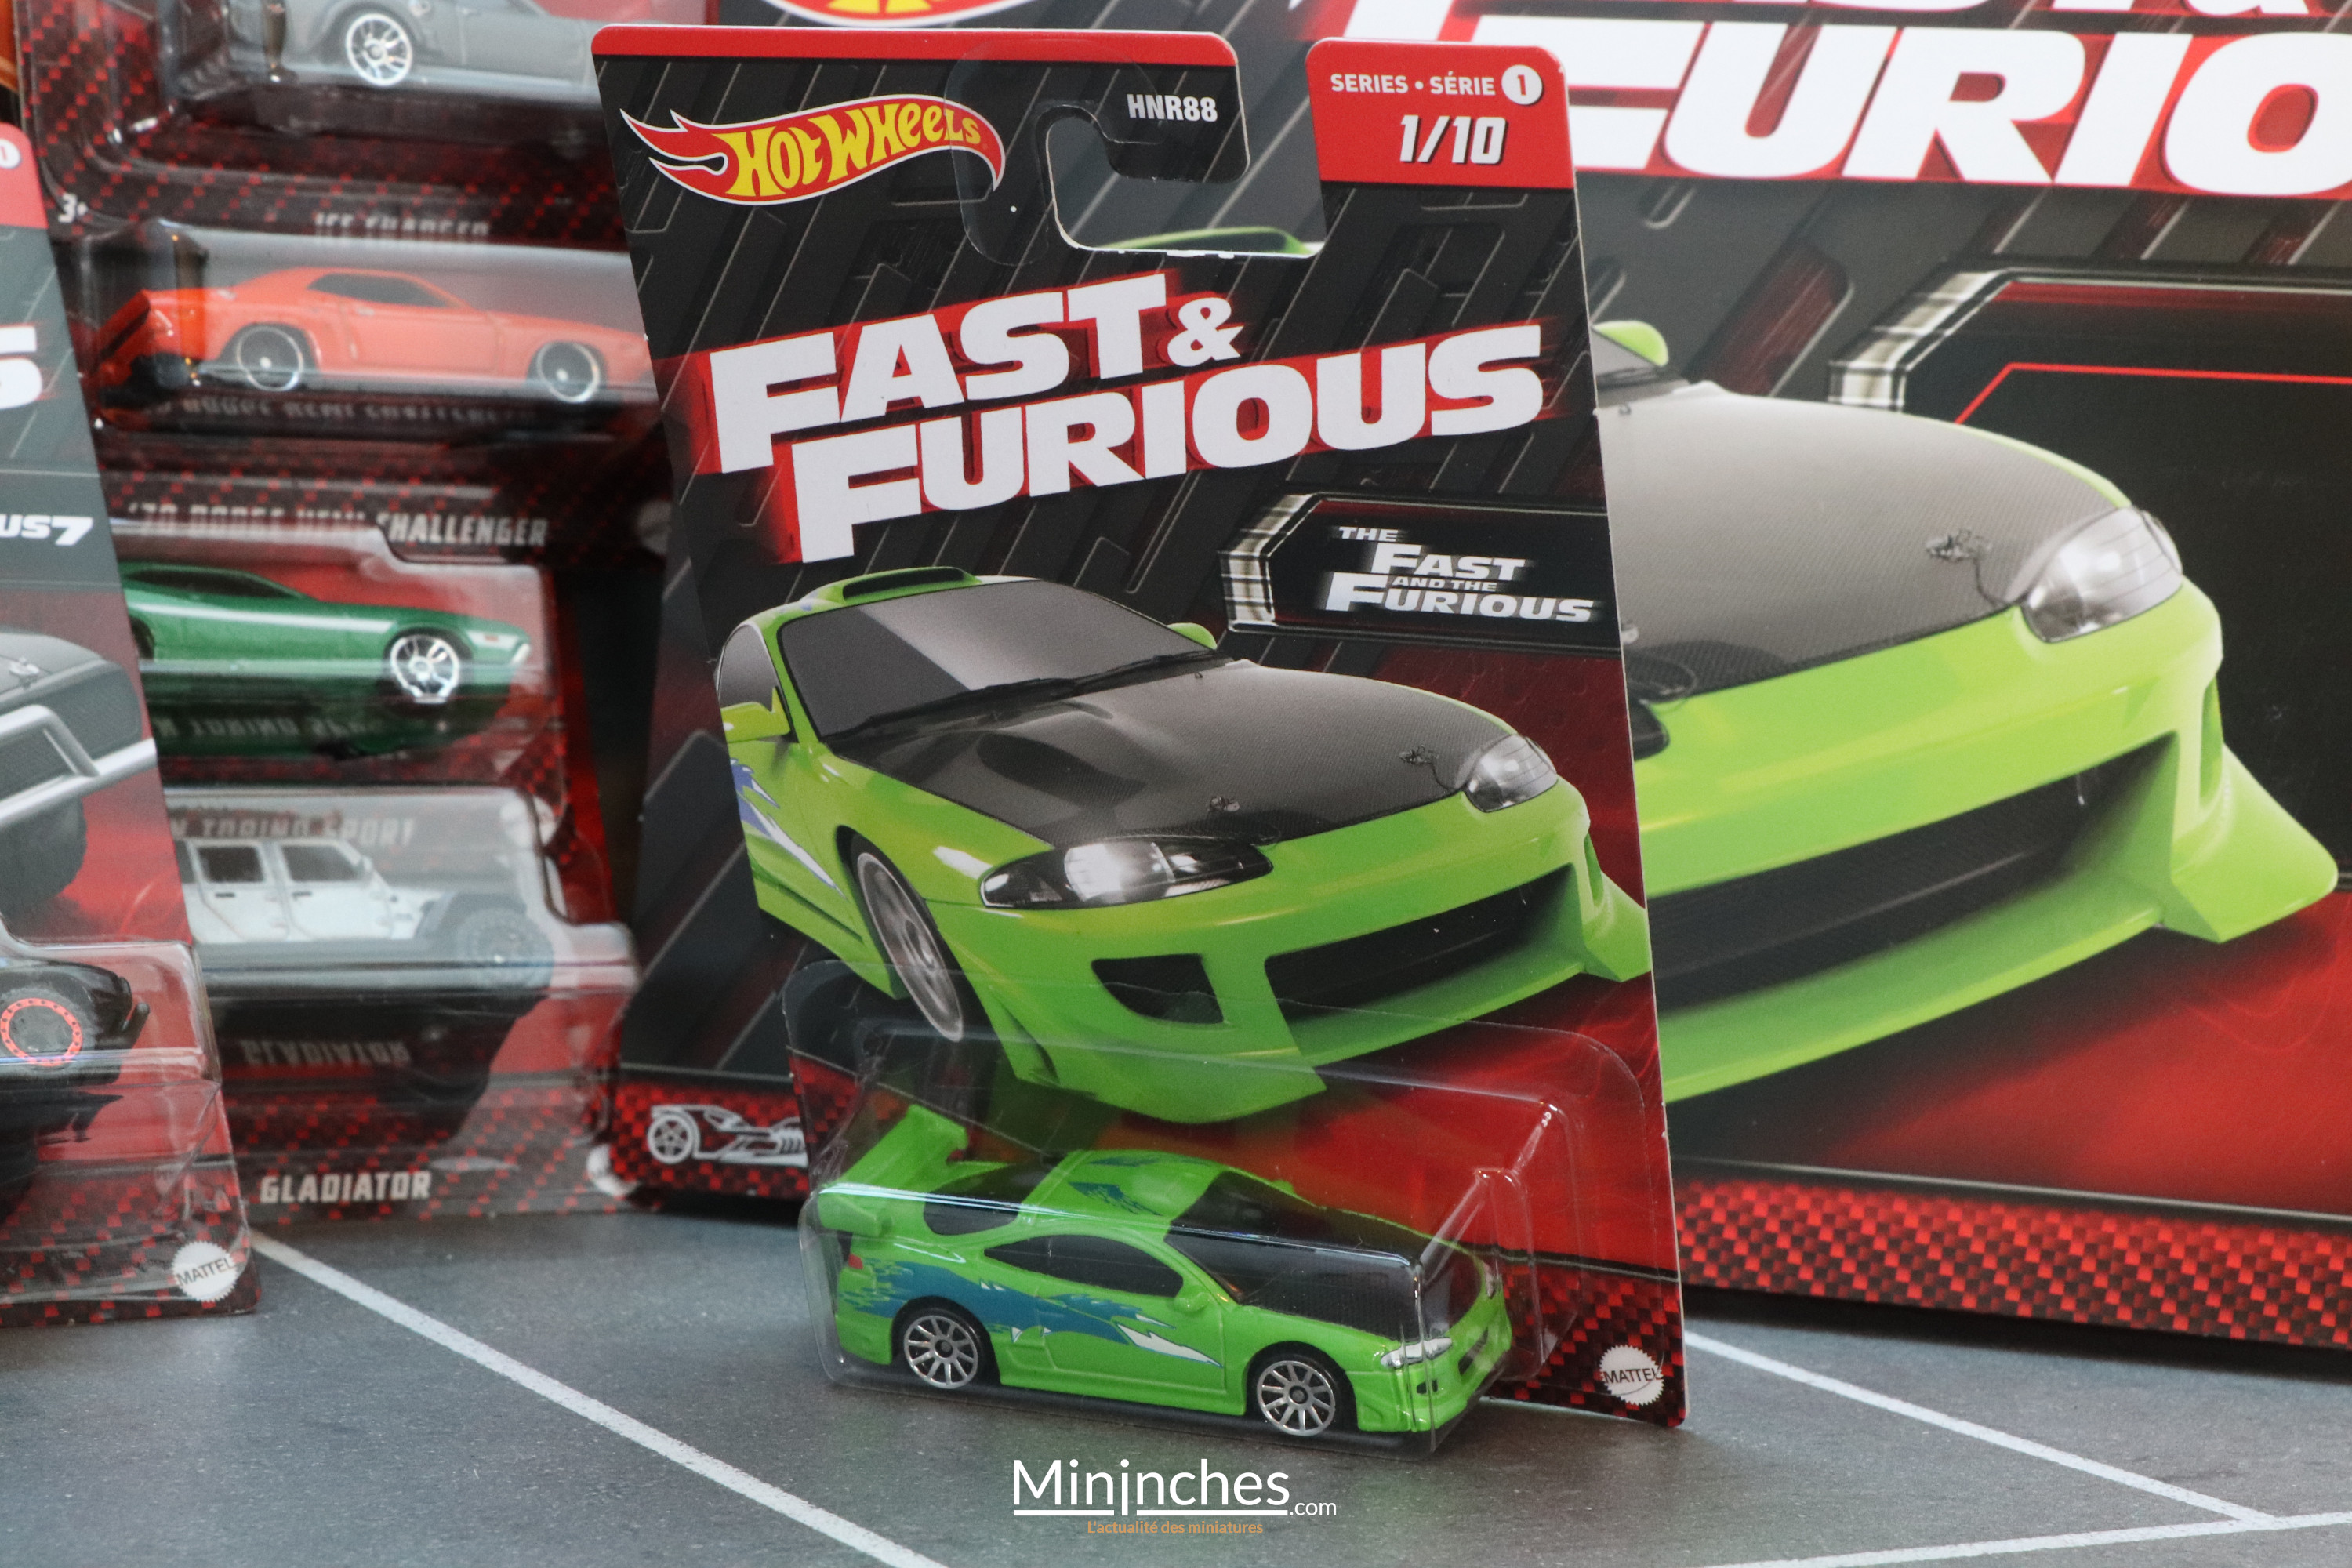 Hot Wheels - Voici la nouvelle série Fast & Furious ! - Mininches